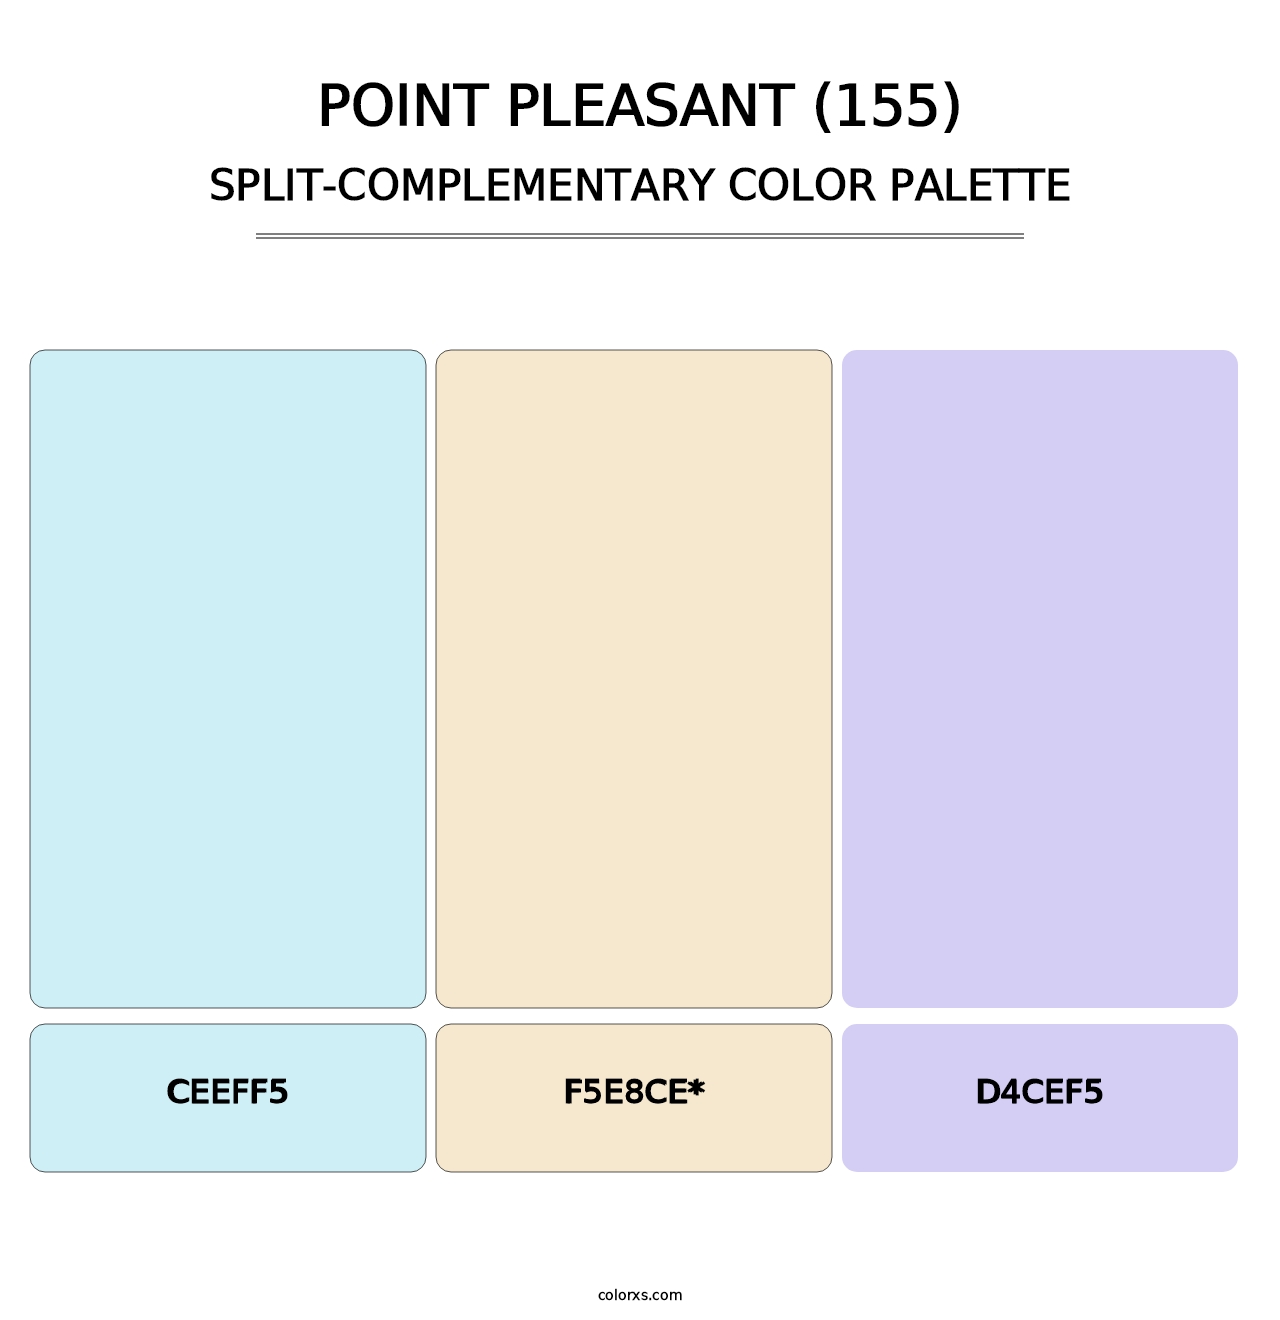 Point Pleasant (155) - Split-Complementary Color Palette